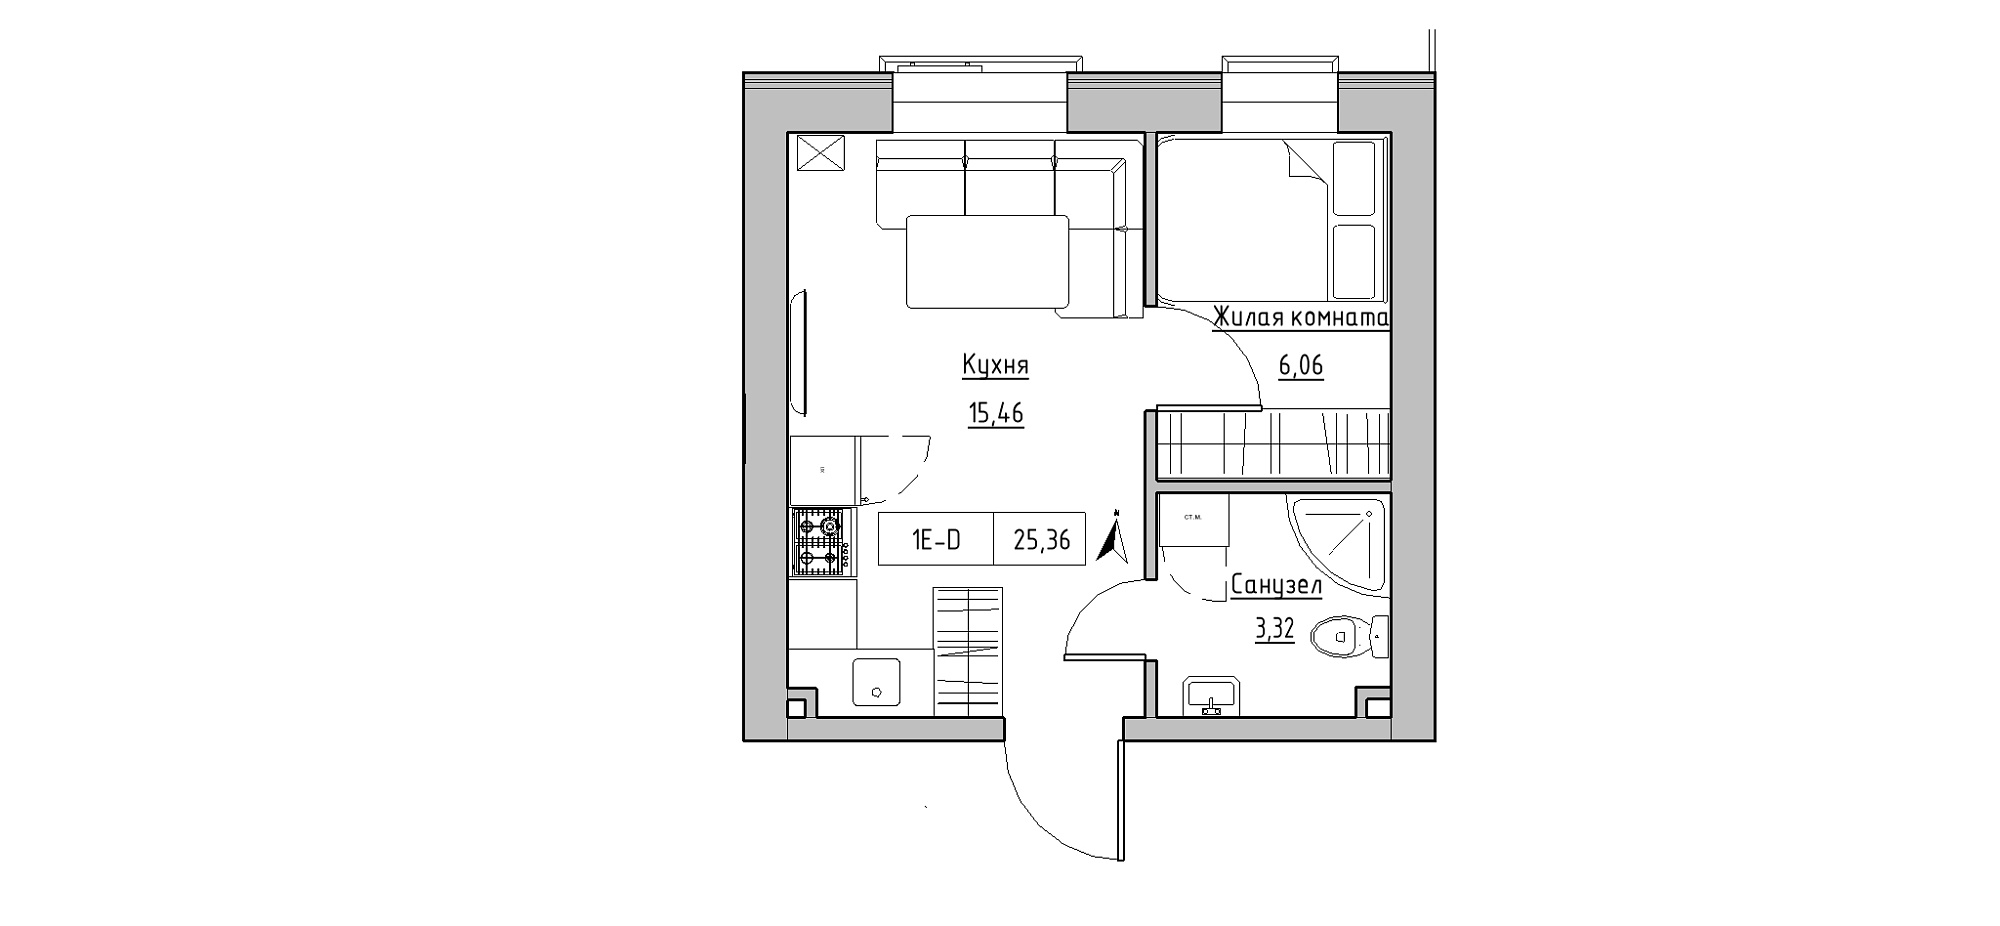 Планування 1-к квартира площею 25.36м2, KS-020-04/0002.